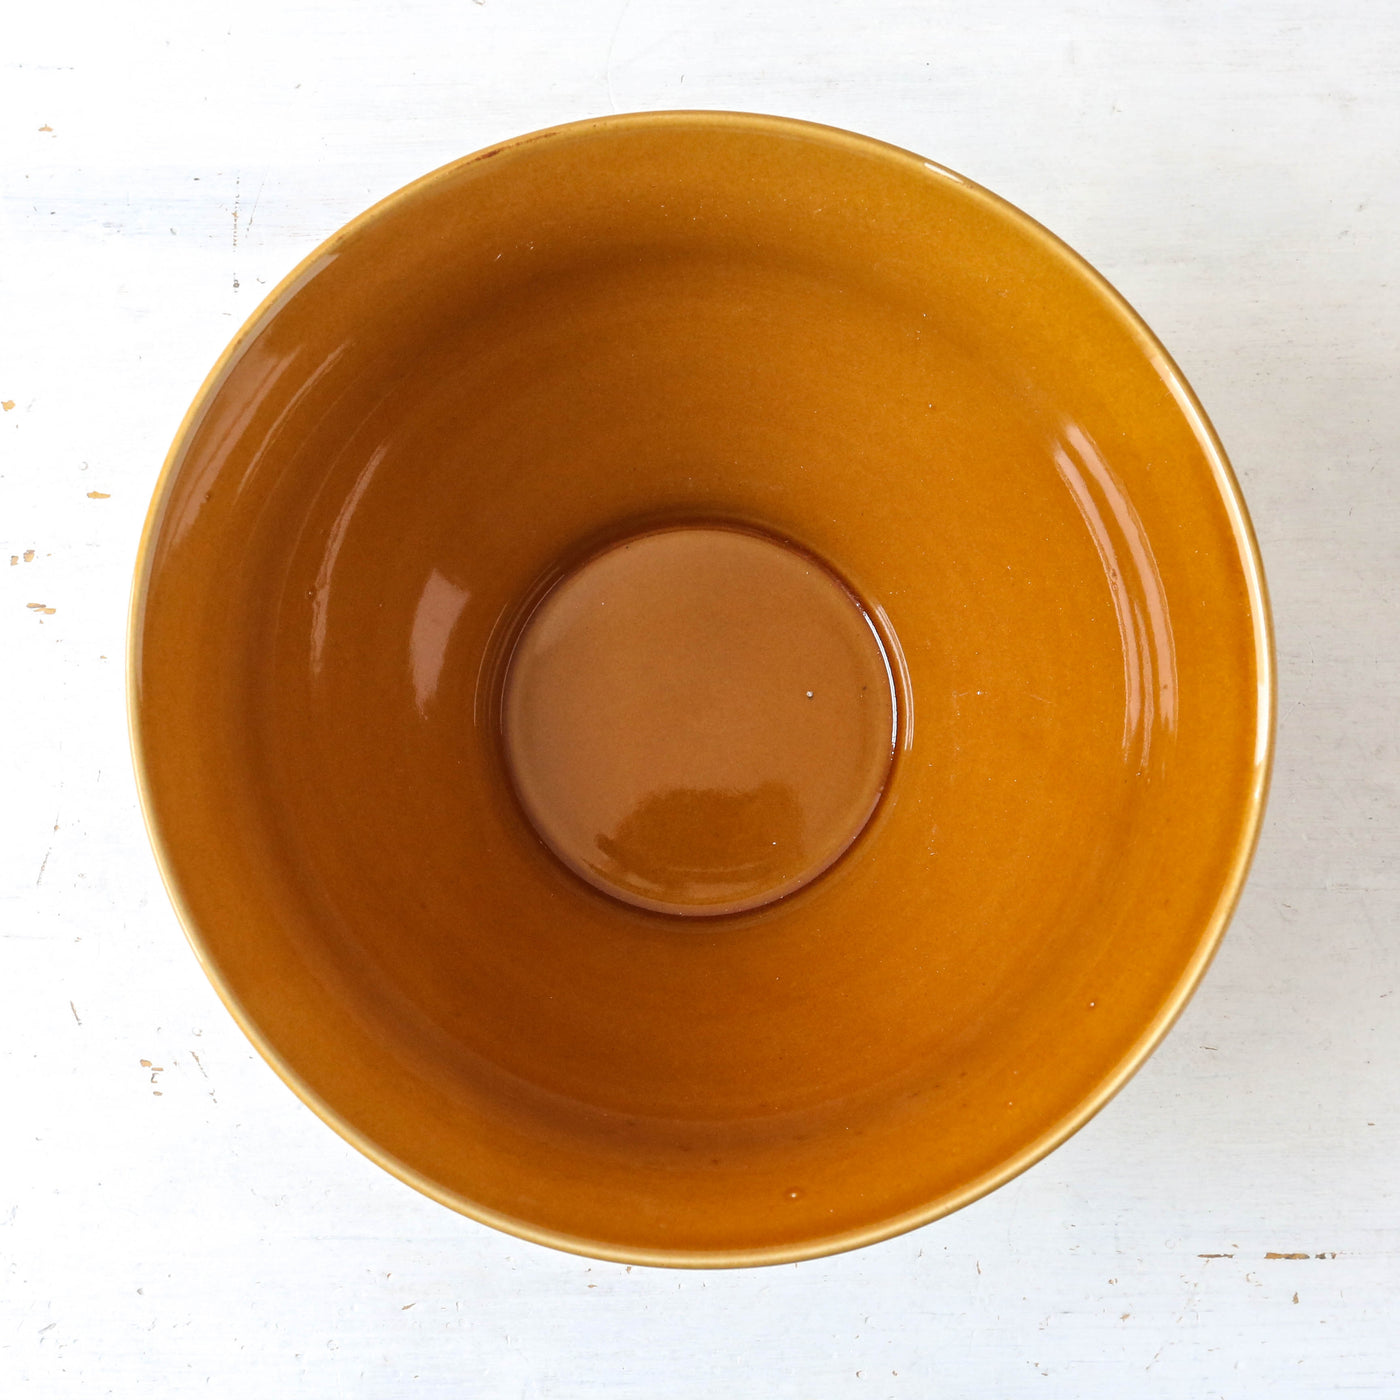 Lynett Brown Stoneware Baking Bowl